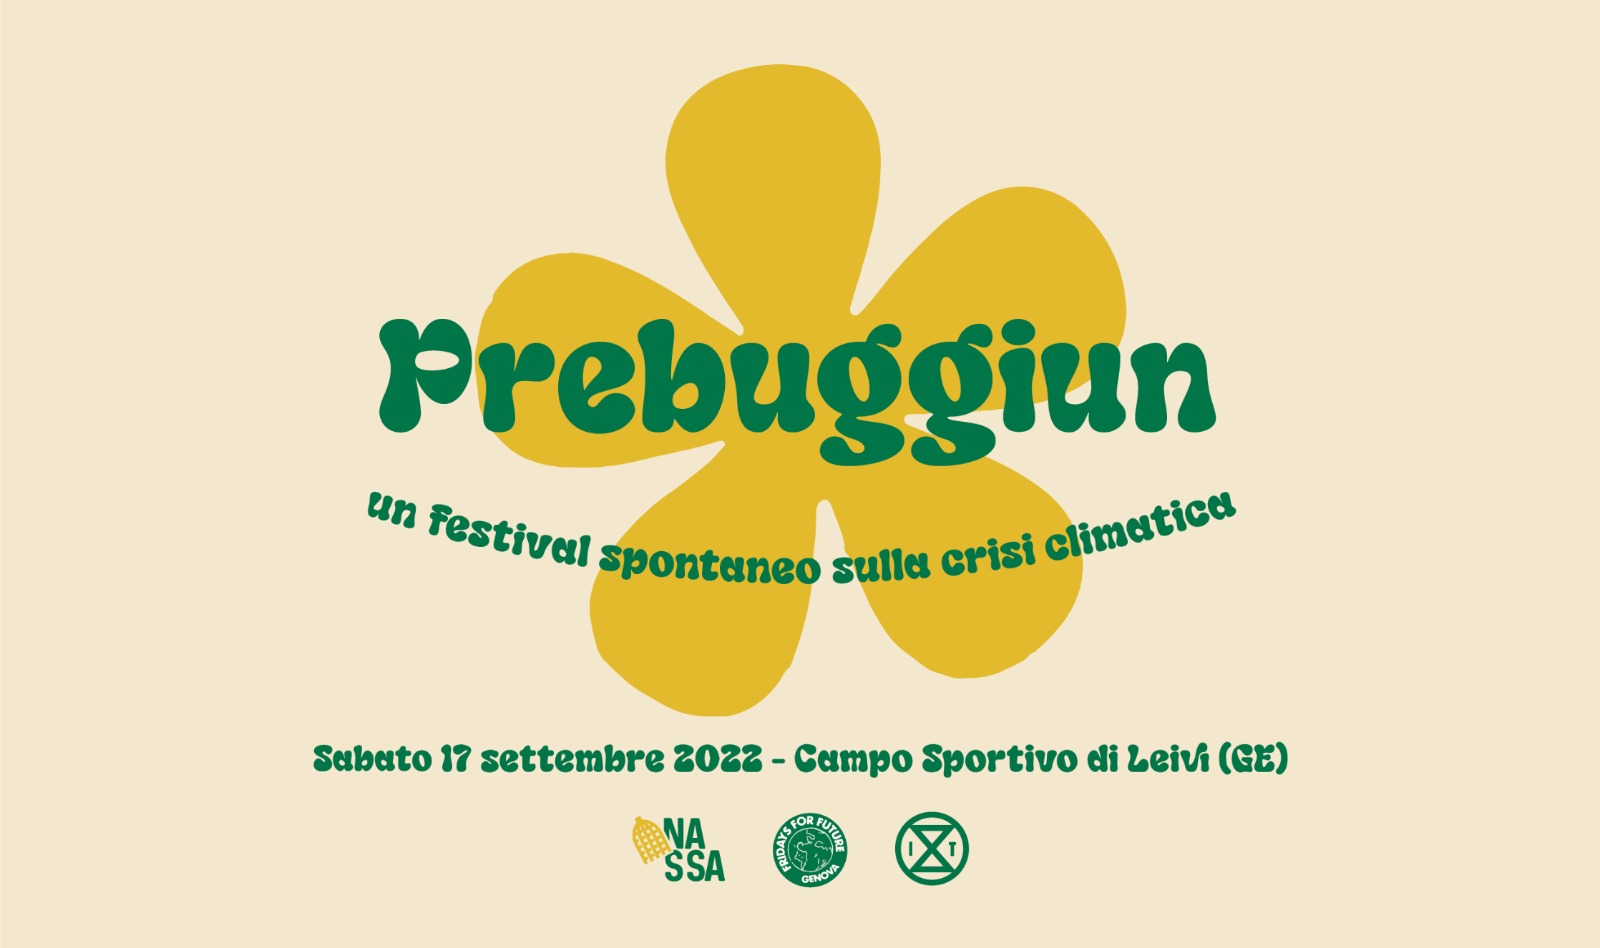 Prebuggiun - Un festival spontaneo sulla crisi climatica